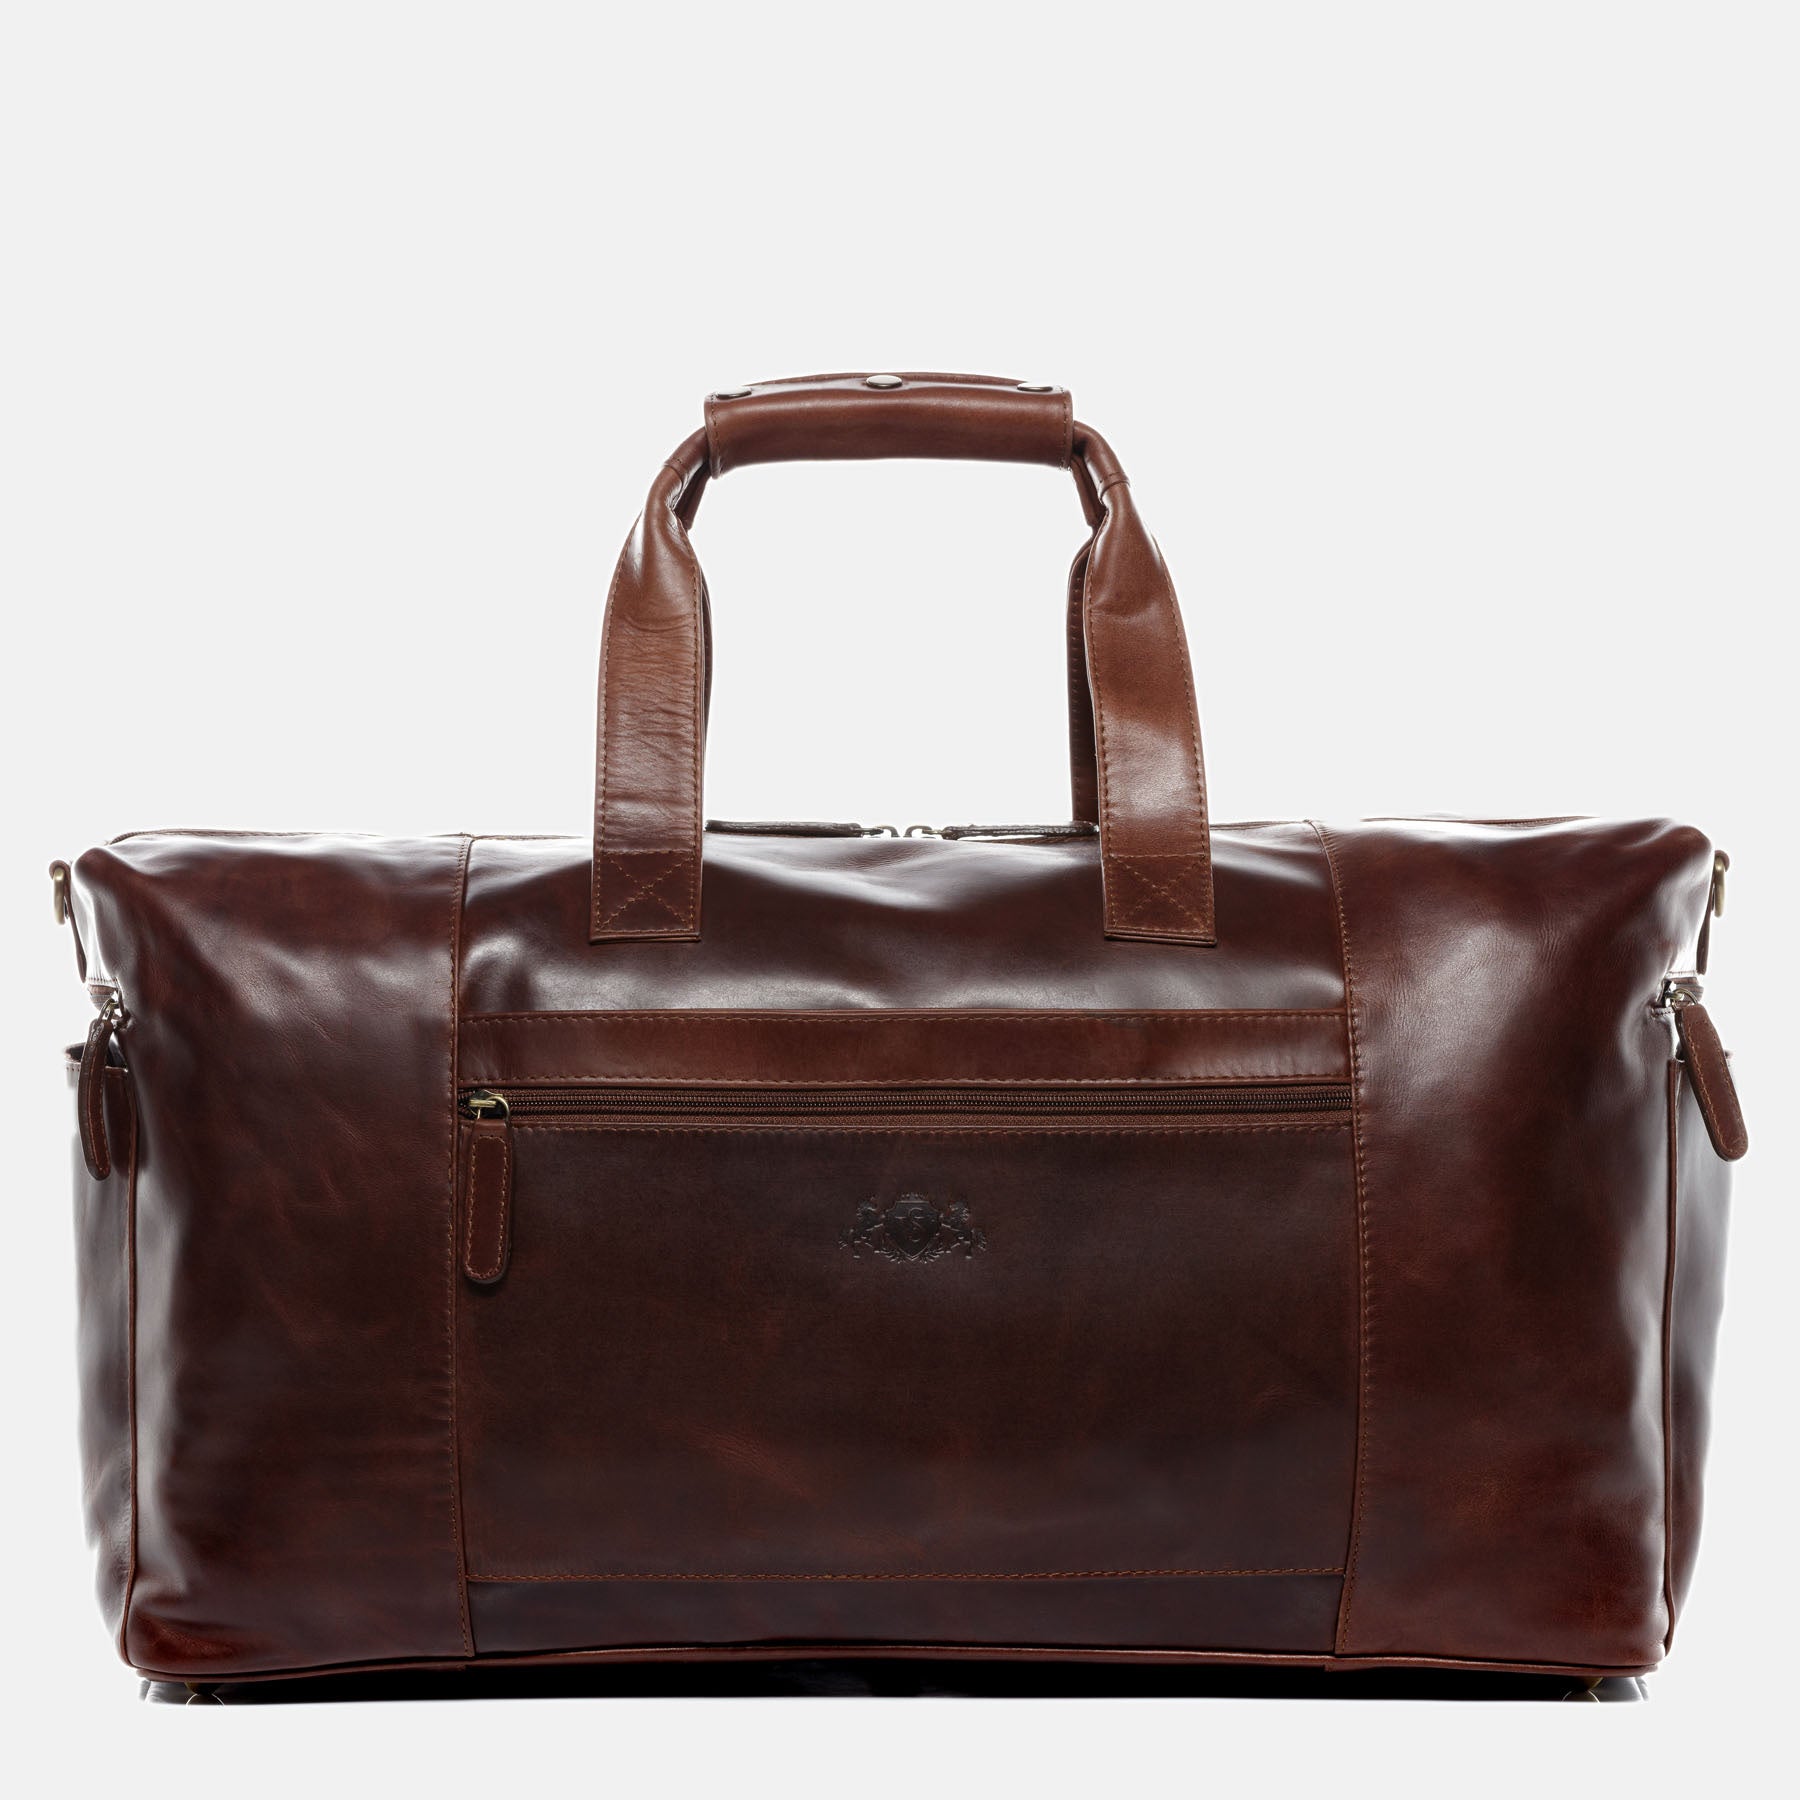 Travel bag BRISTOL SIDE natural leather brown